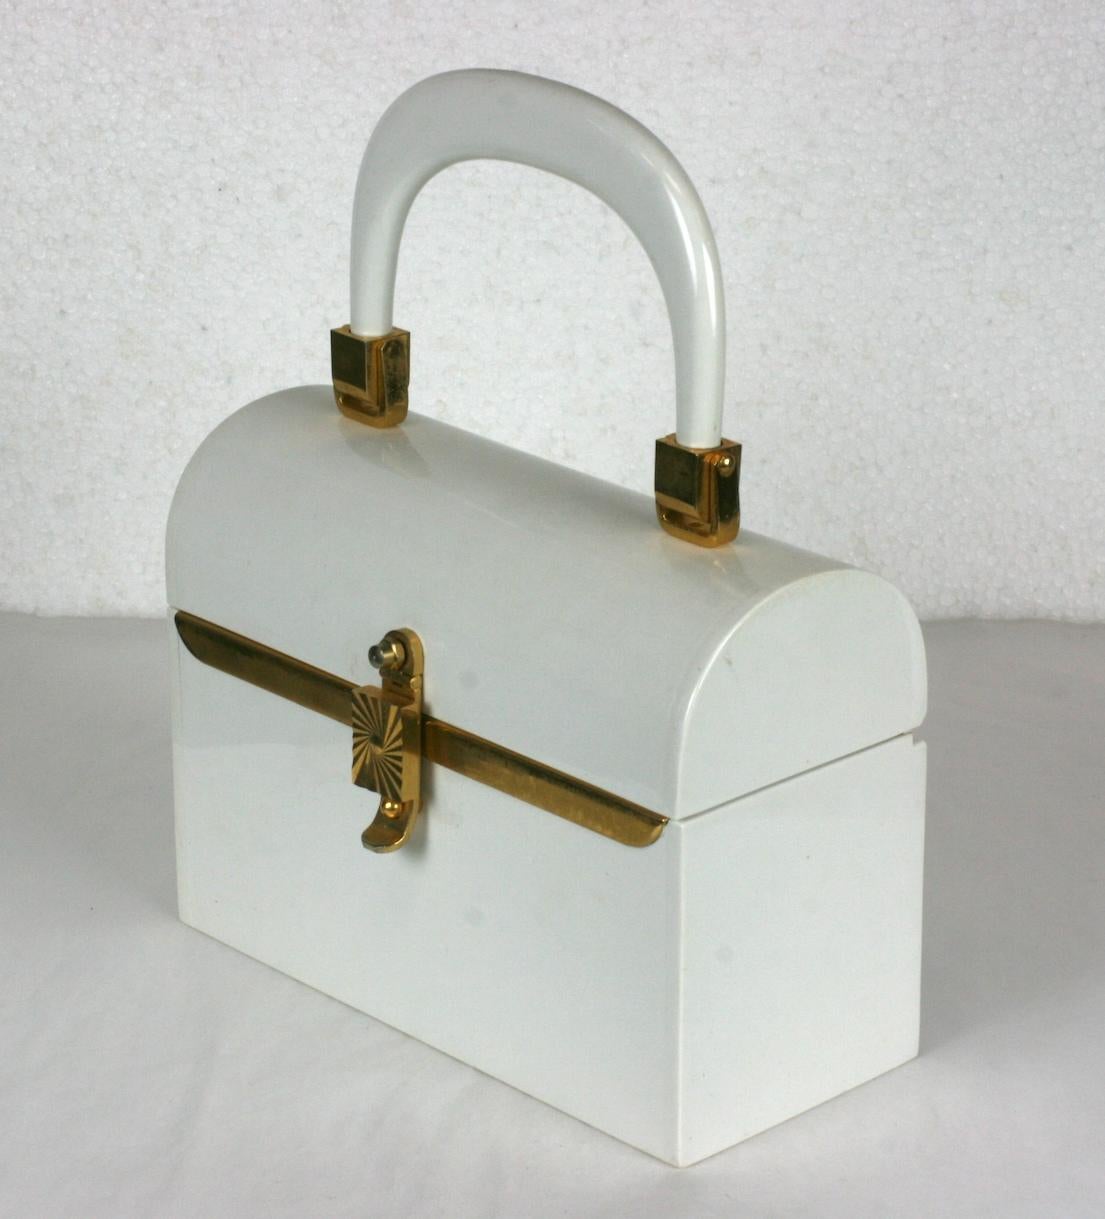 Miniatur Mod 1960's Plastic Box Bag in Kreide weiß mit vergoldeten Akzenten. Klappbare Griffe. 
6